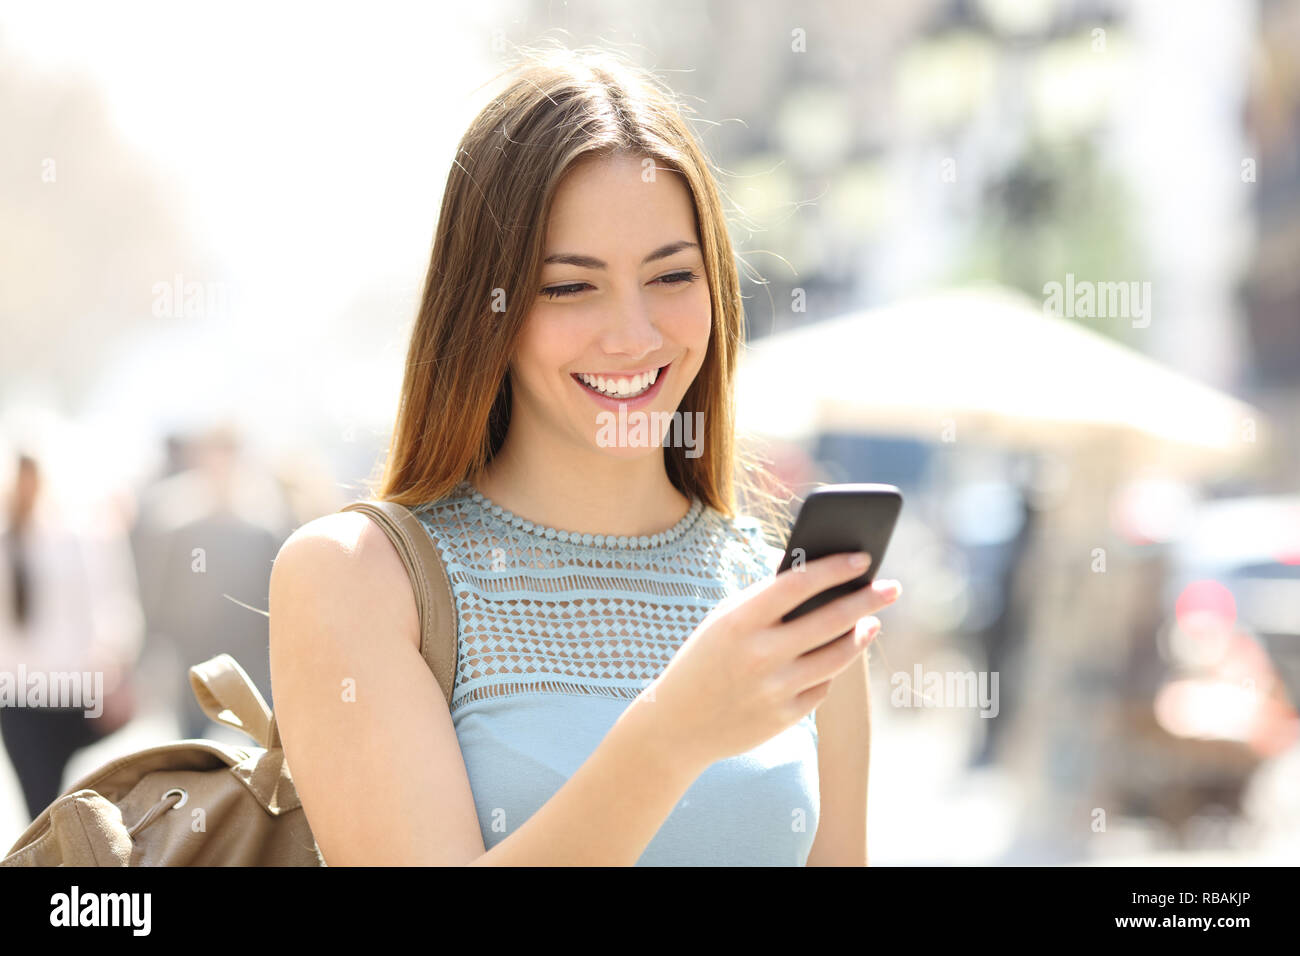 Glückliches Mädchen zu Fuß auf der Straße prüfen smart phone Inhalt Stockfoto